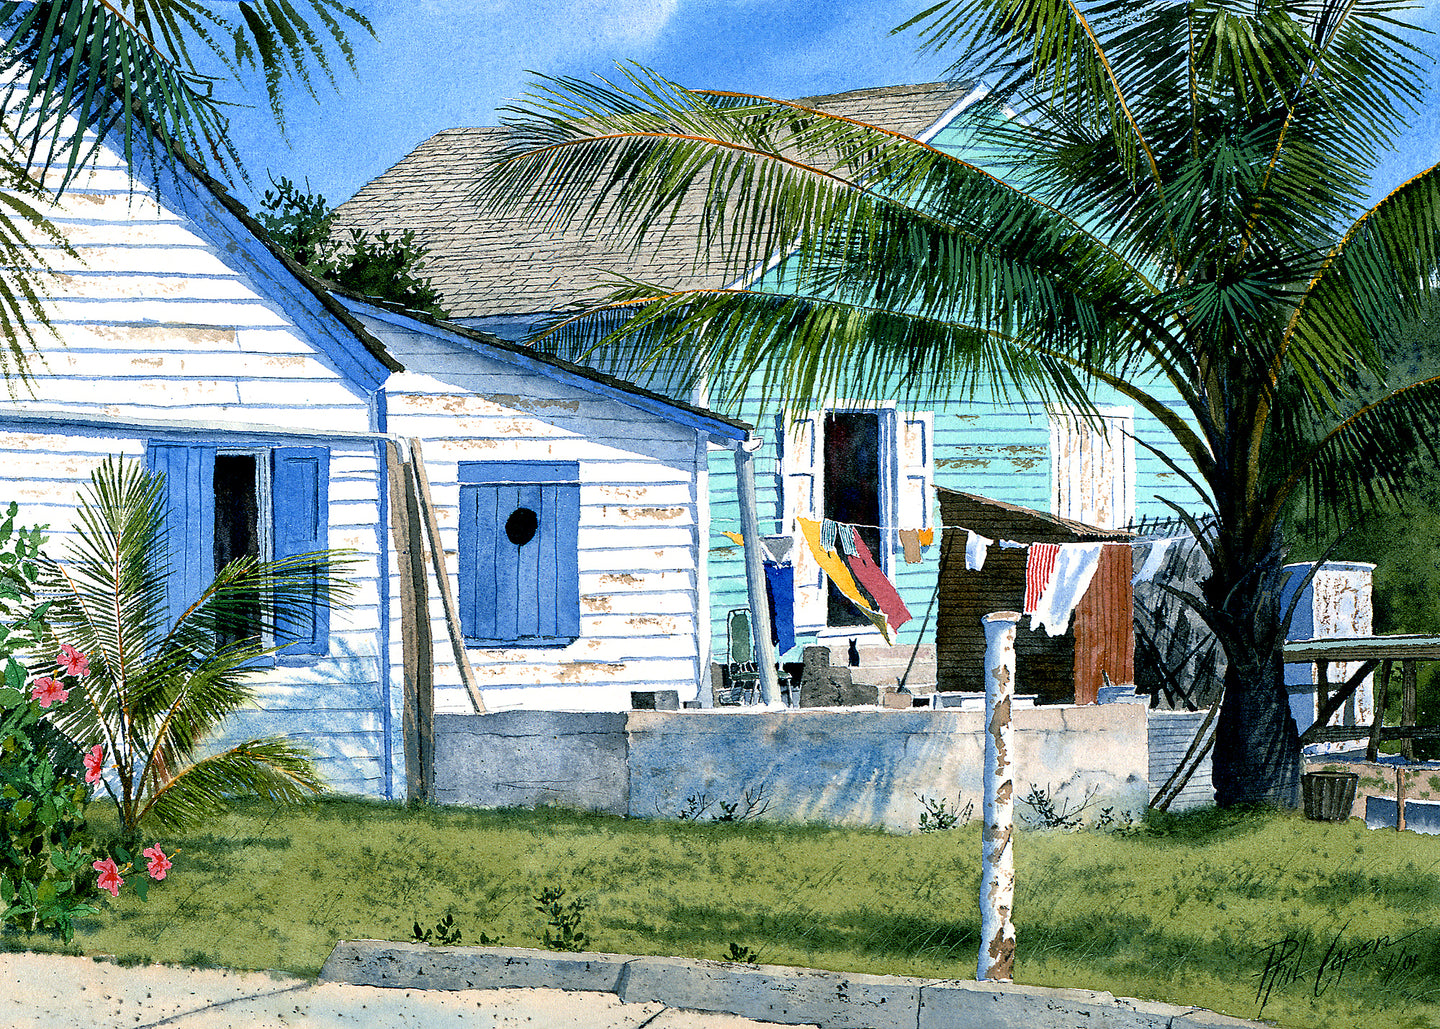 Guana Cay Settlement